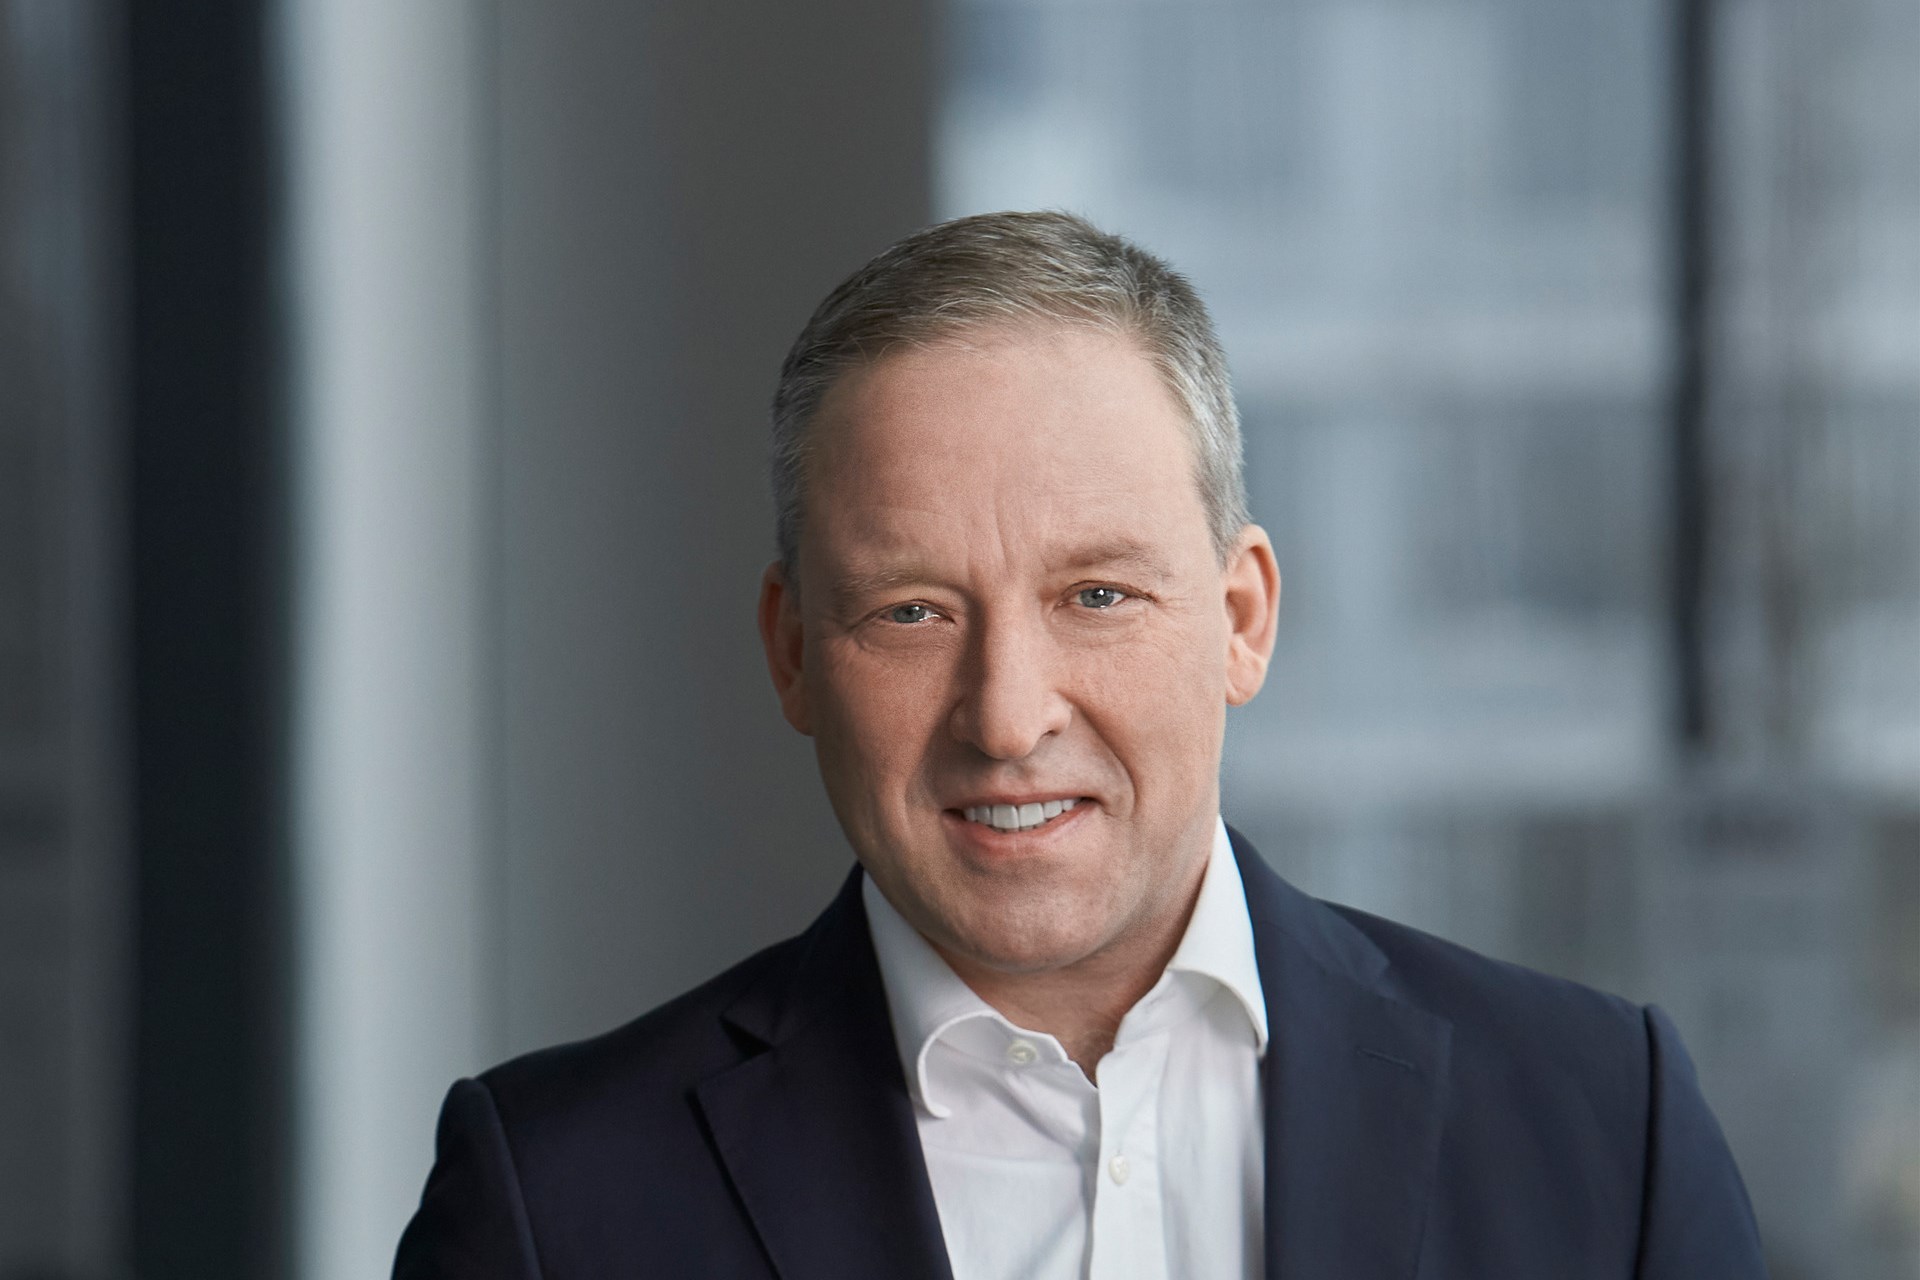 Matthias Zachert, Chairman of the Board of Management